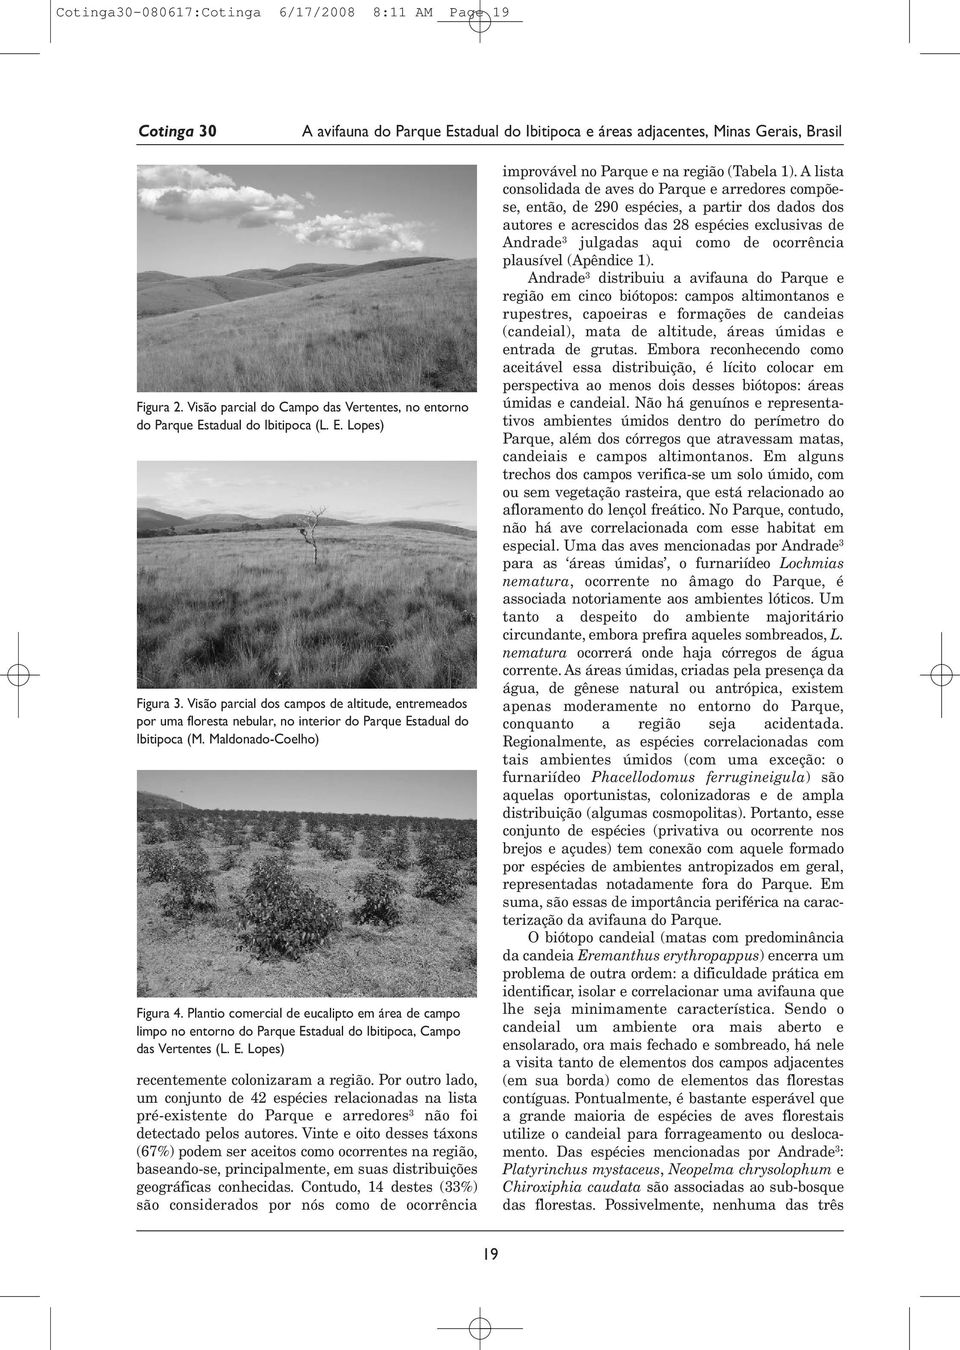 Plantio comercial de eucalipto em área de campo limpo no entorno do Parque Estadual do Ibitipoca, Campo das Vertentes (L. E. Lopes) recentemente colonizaram a região.